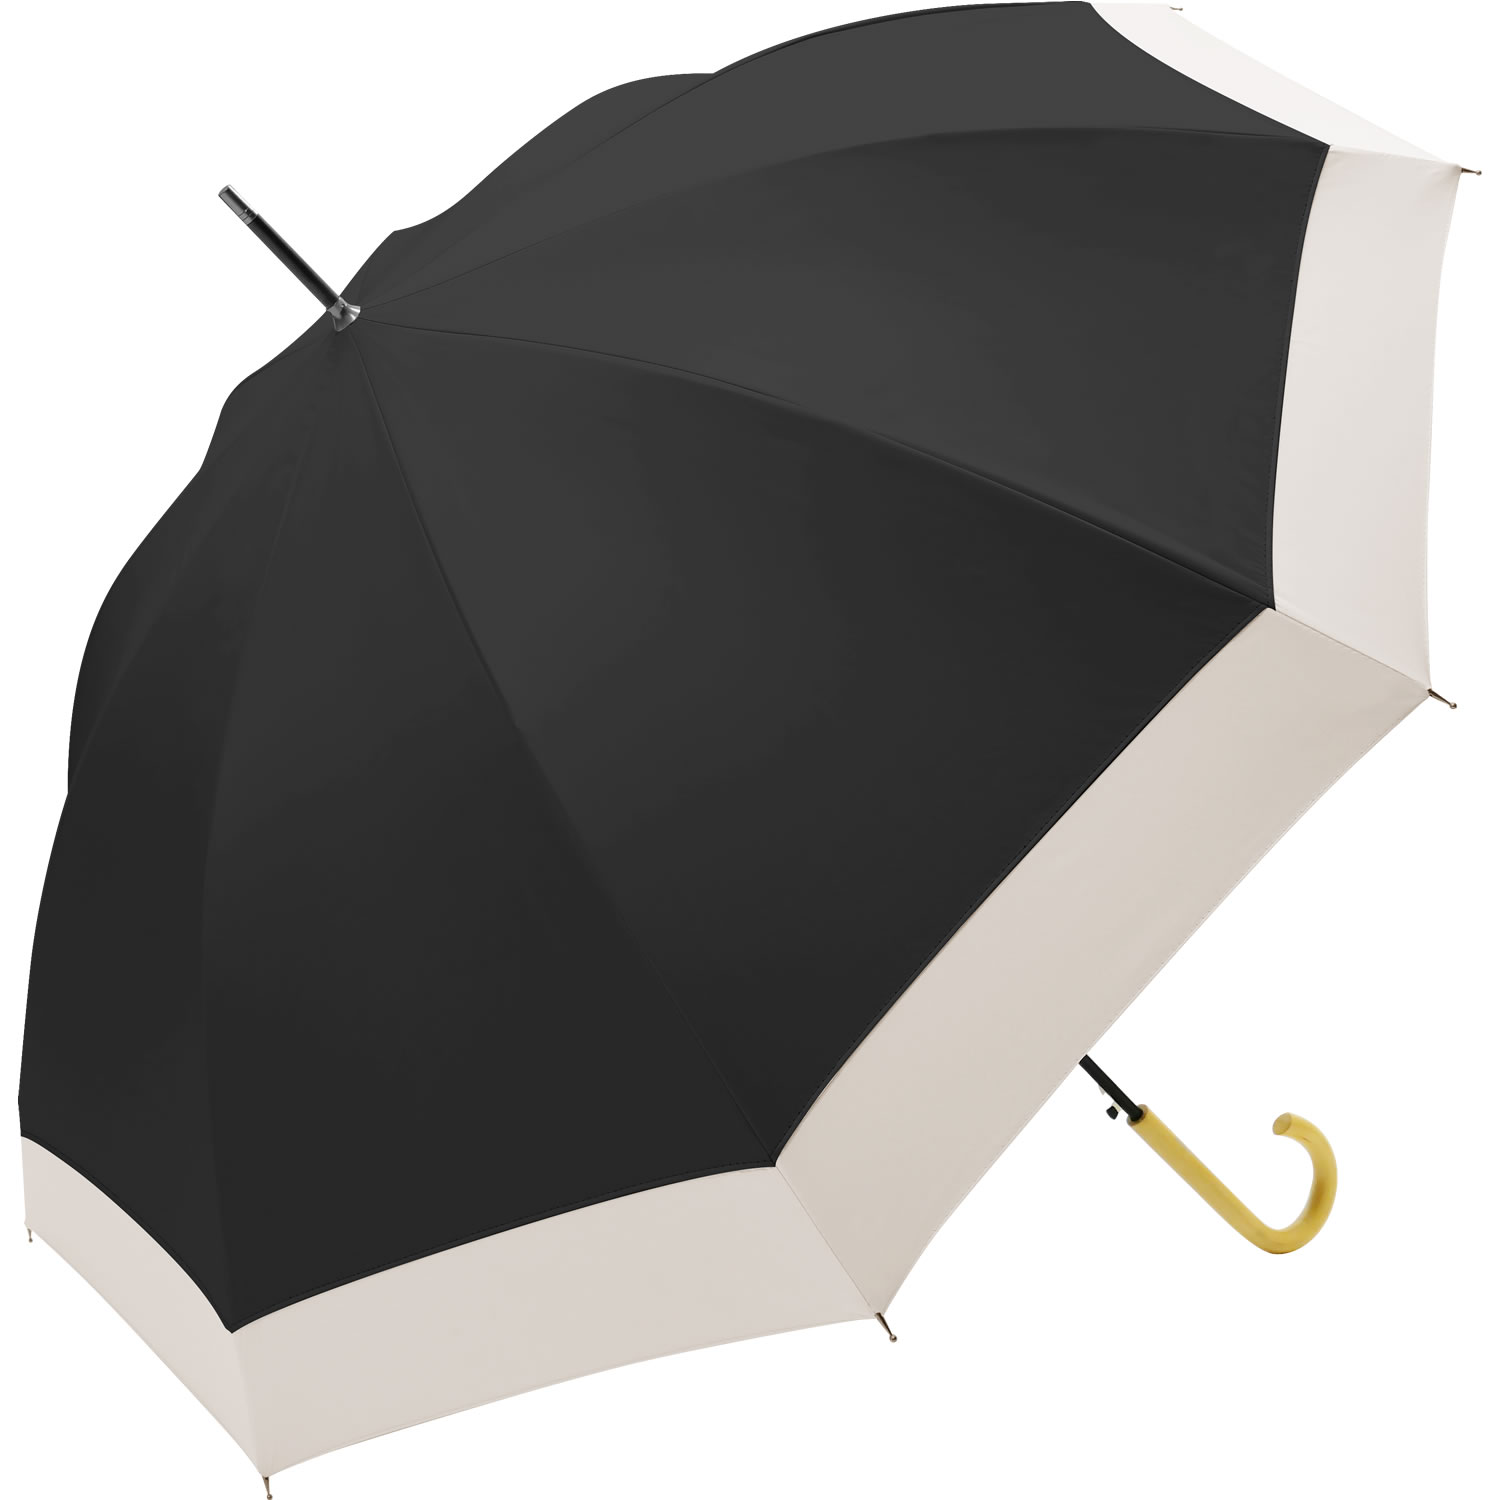 日傘 完全遮光 長傘 晴雨兼用 10本骨 ブラックコーティングで反射光も遮断 大きい107cm uvカット 100 遮光 レディース 雨傘 おしゃれ  軽量 紫外線対策 グッズ